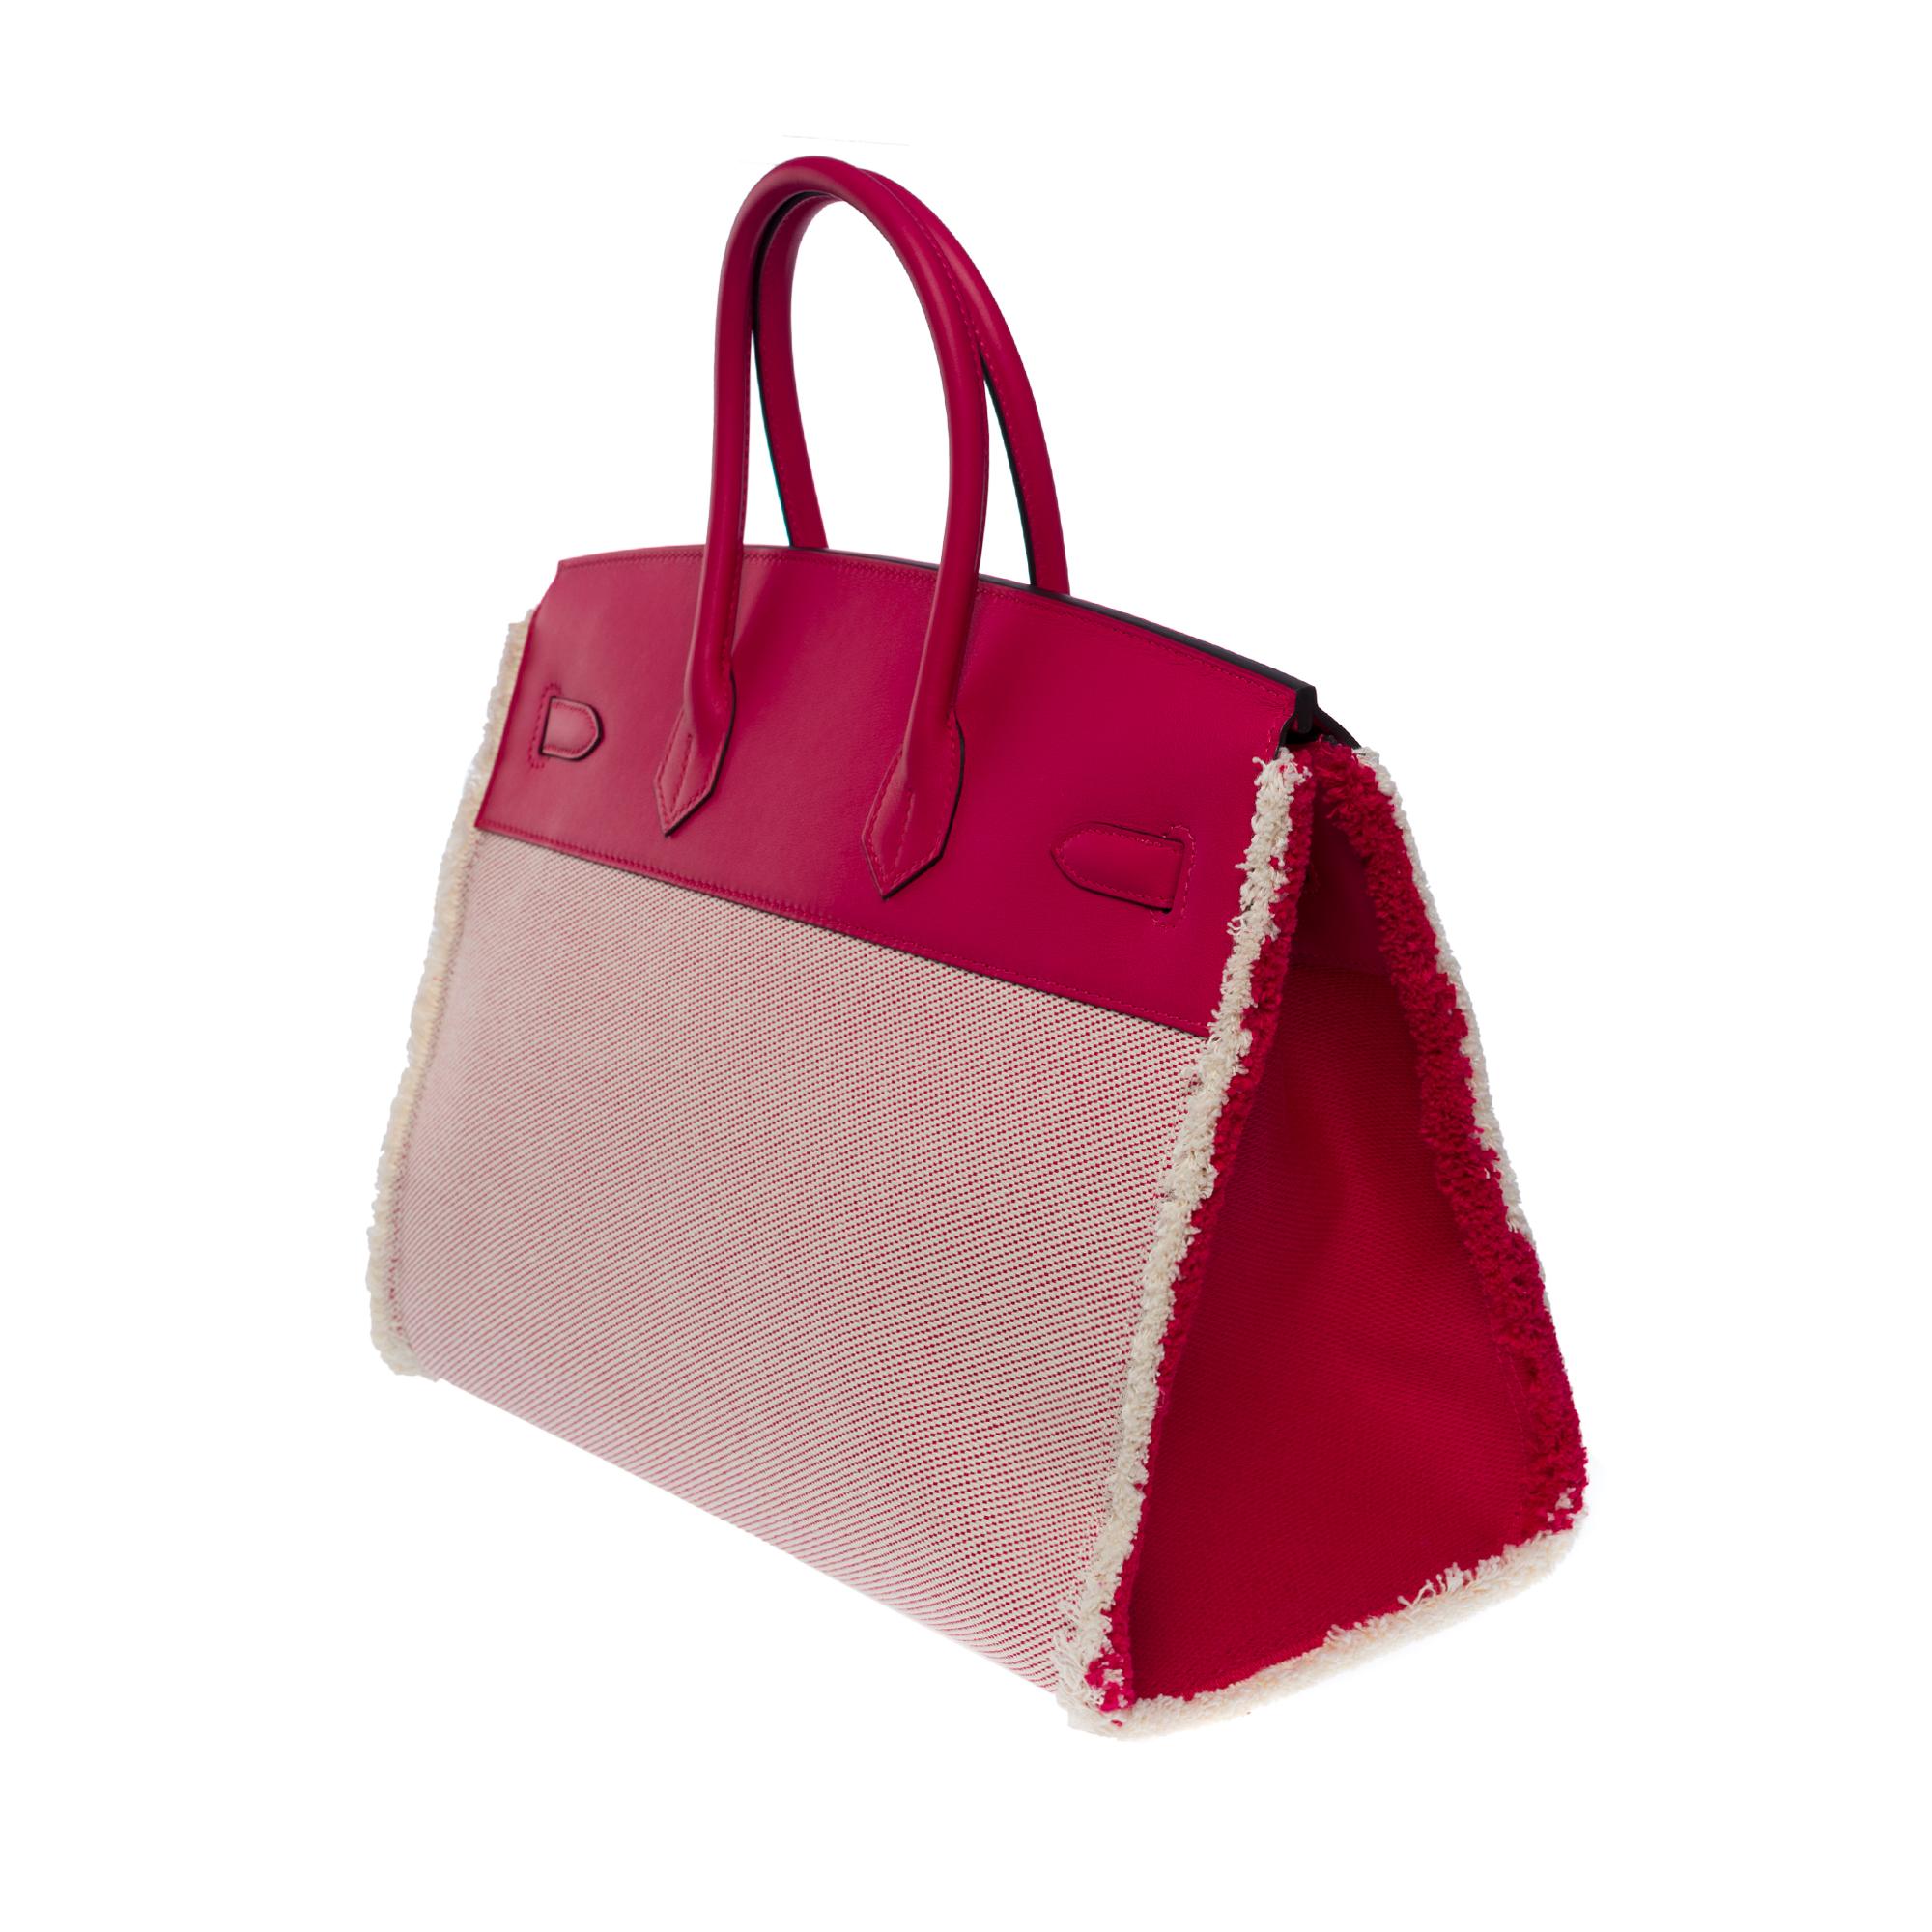 Neu Fray Fray Hermès Birkin 35 Handtasche in beige Leinwand / rosa Swift Leder, SHW für Damen oder Herren im Angebot